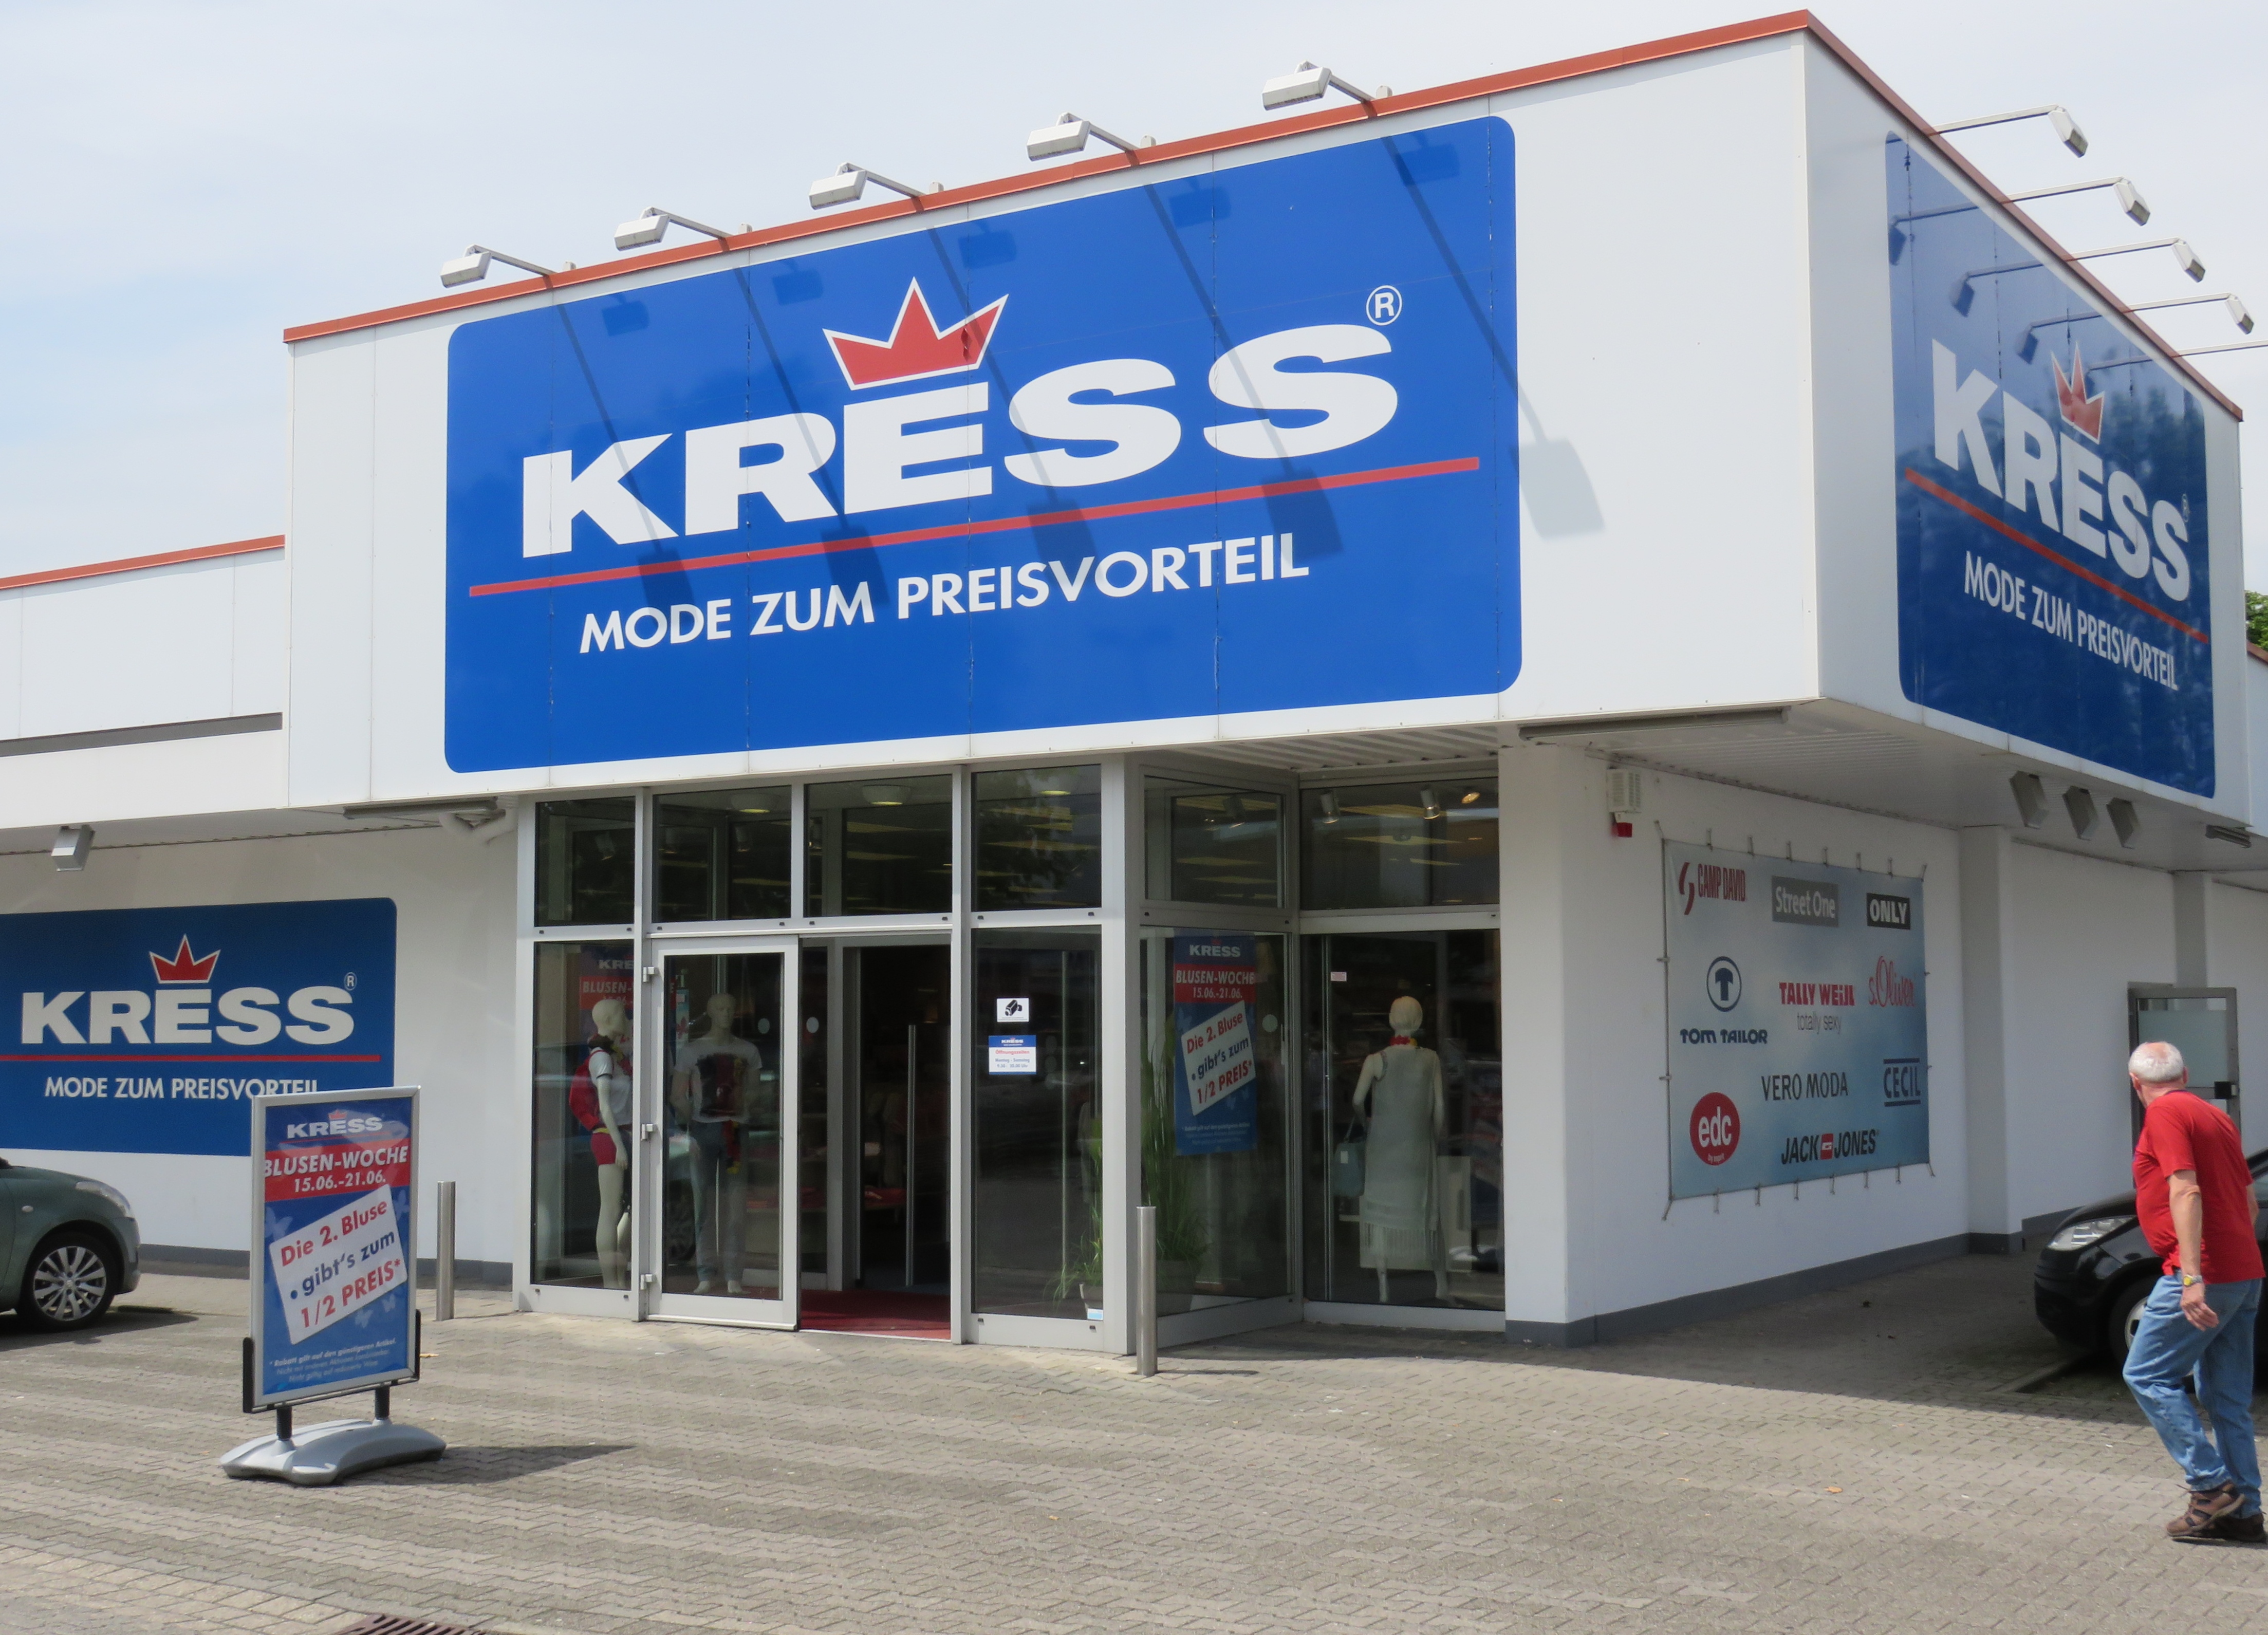 Kress GmbH & Co. KG Dortmund in 44149 Dortmund-Oespel